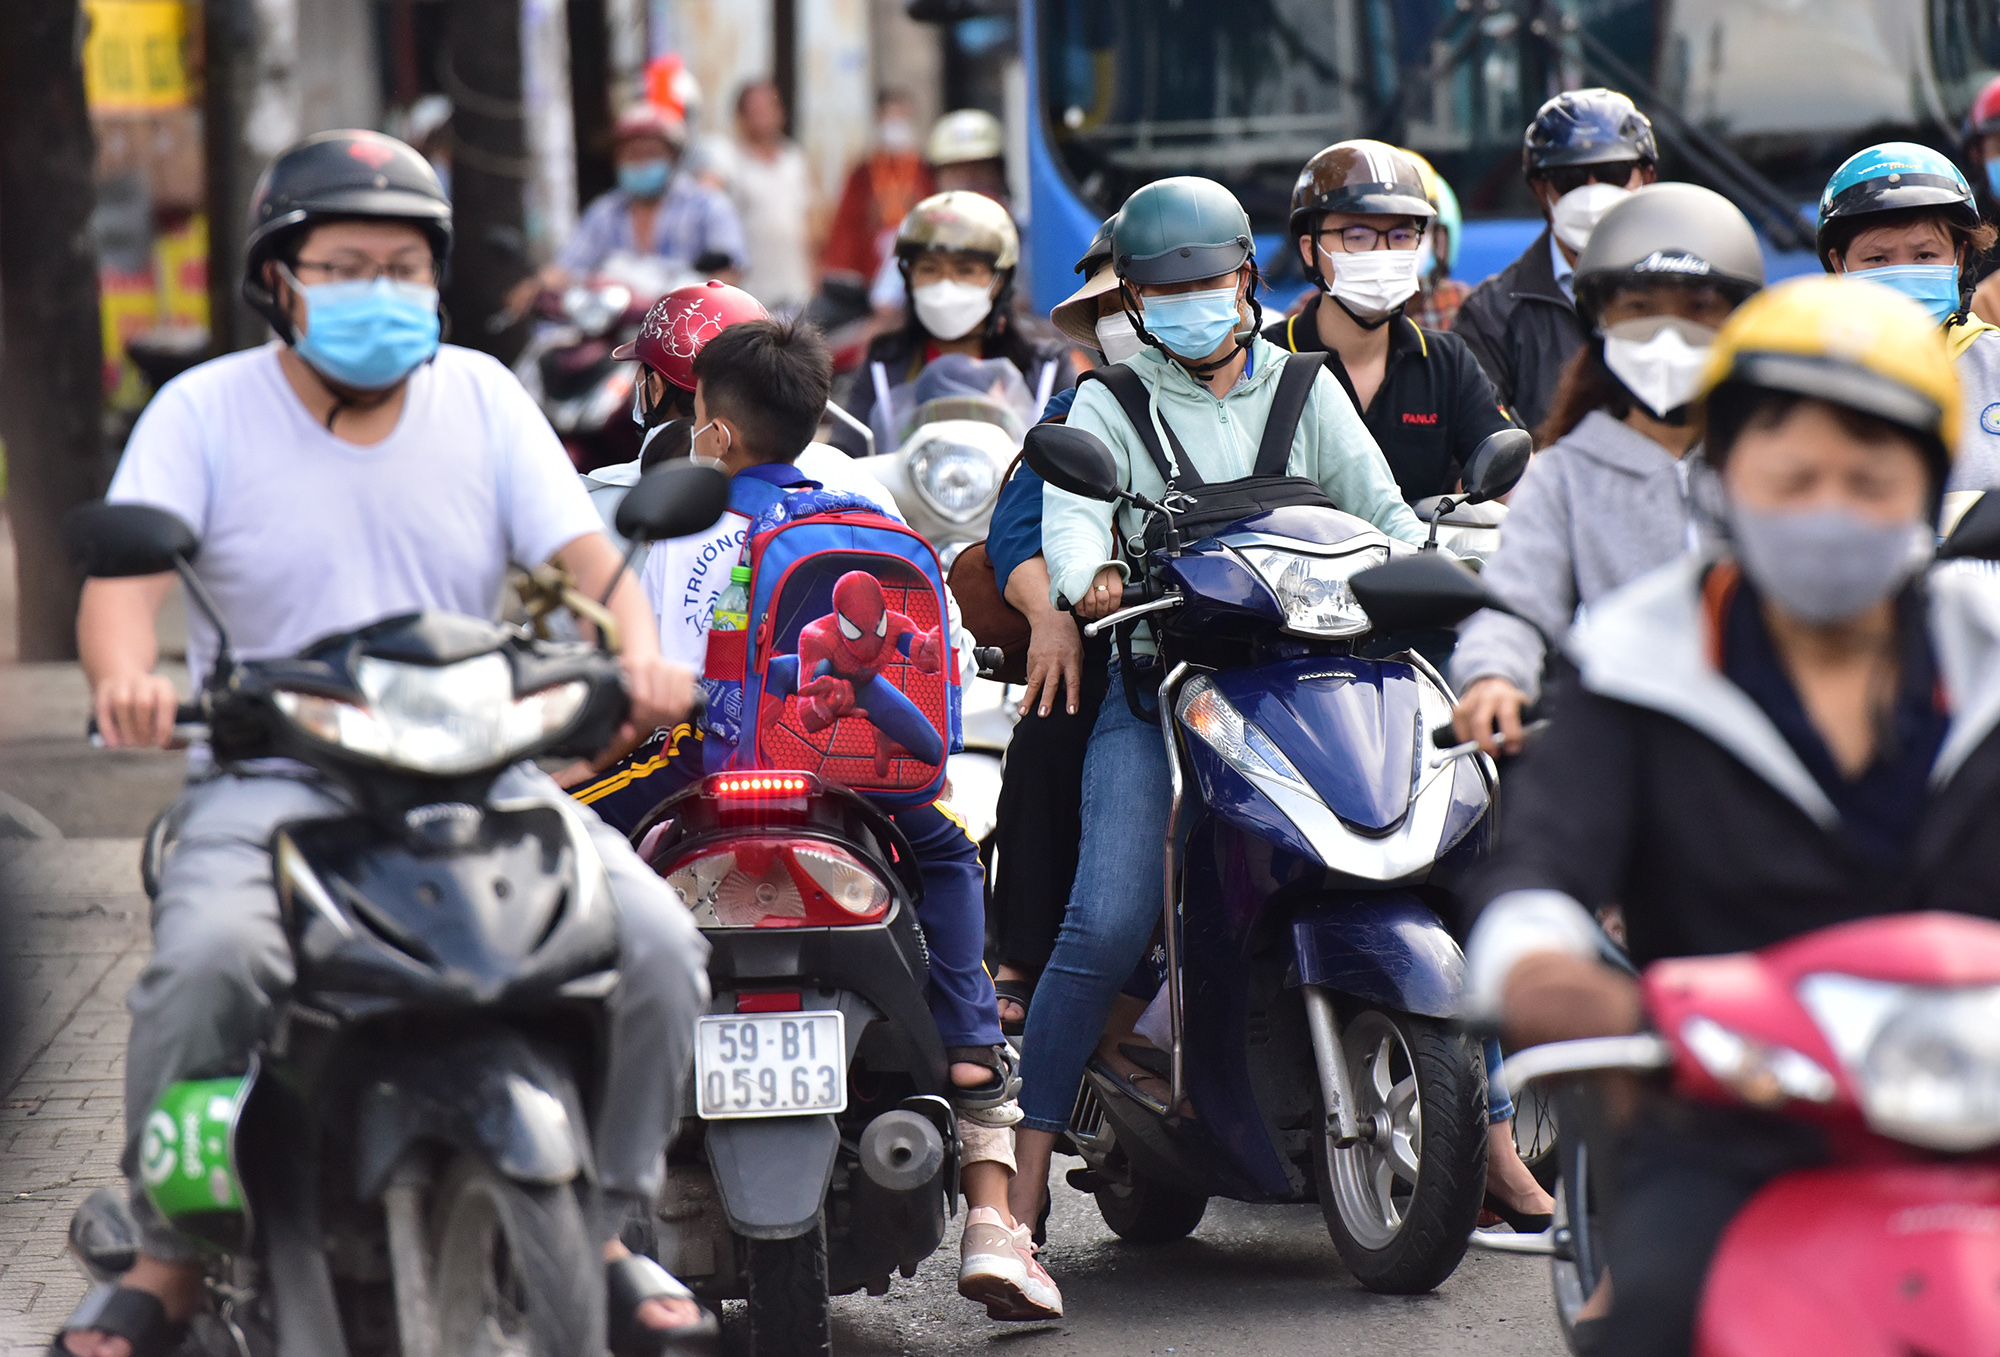 Hà Nội, TP.HCM lại tắc đường kinh hoàng sau nghỉ lễ, người dân chật vật tới nơi làm việc - 26